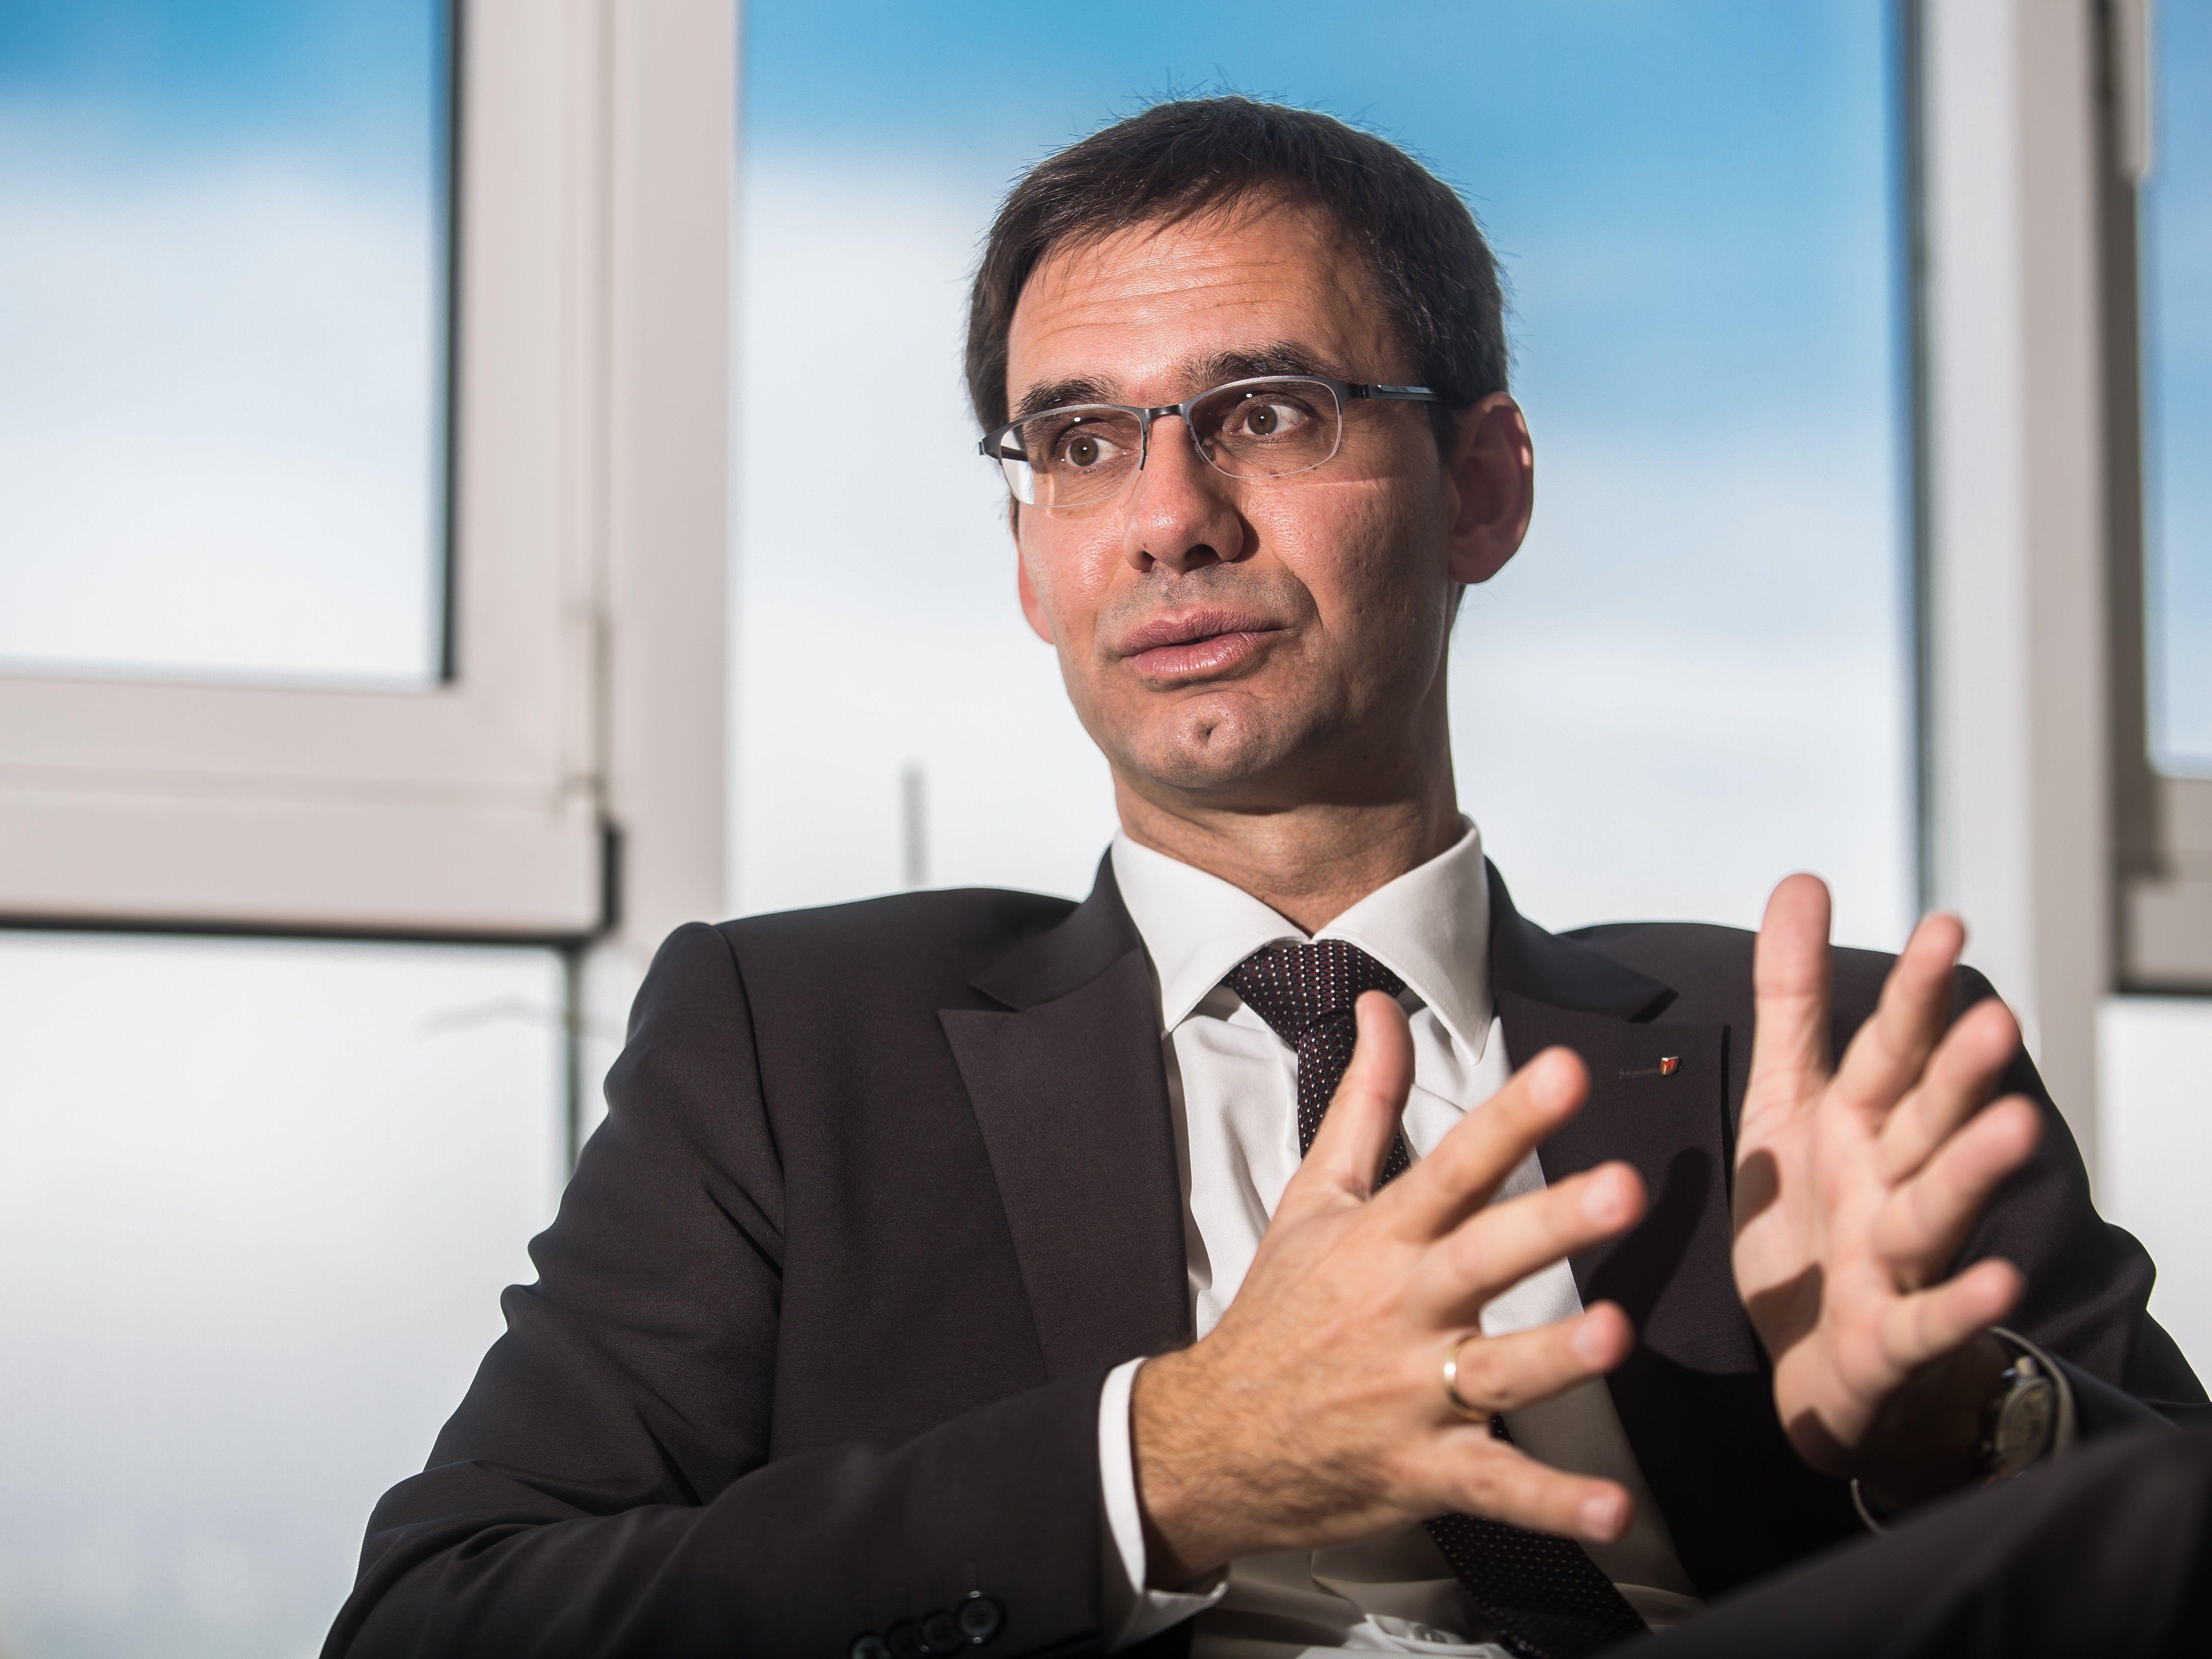 Vorarlberger Regierungschef sieht weitere zähe Verhandlungen bevorstehen